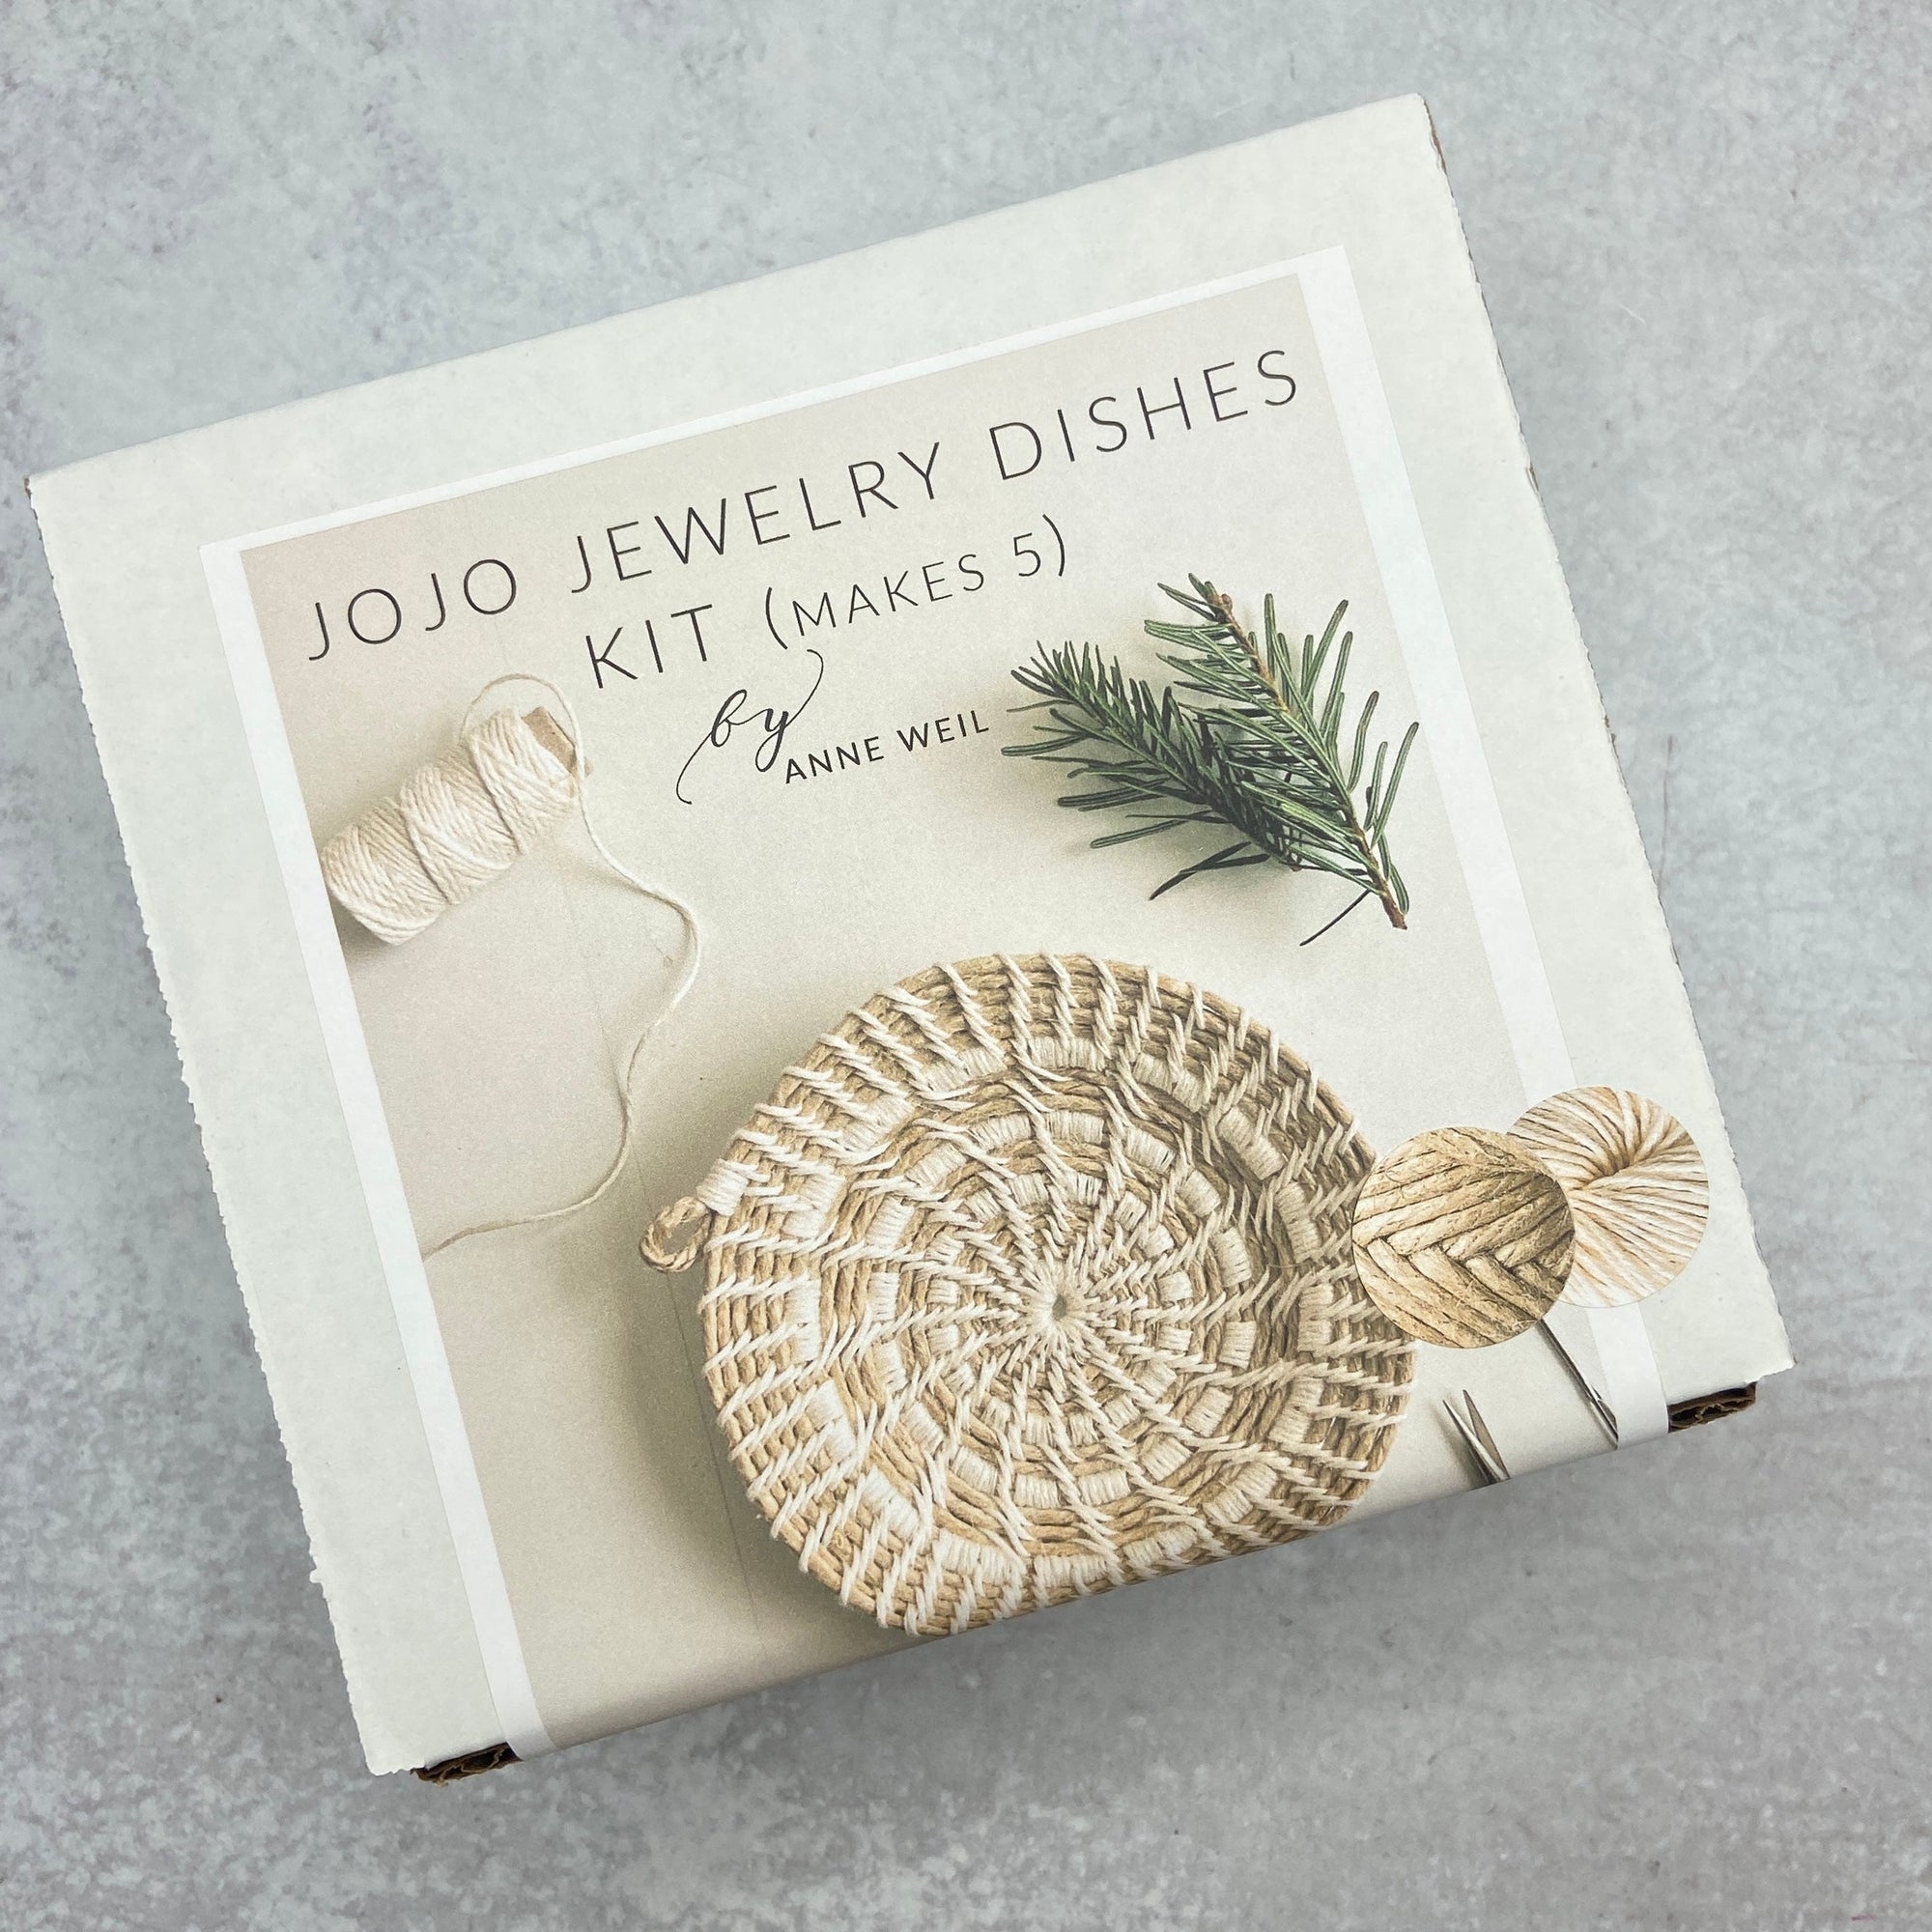 Jojo Jewelry Dishes Kit